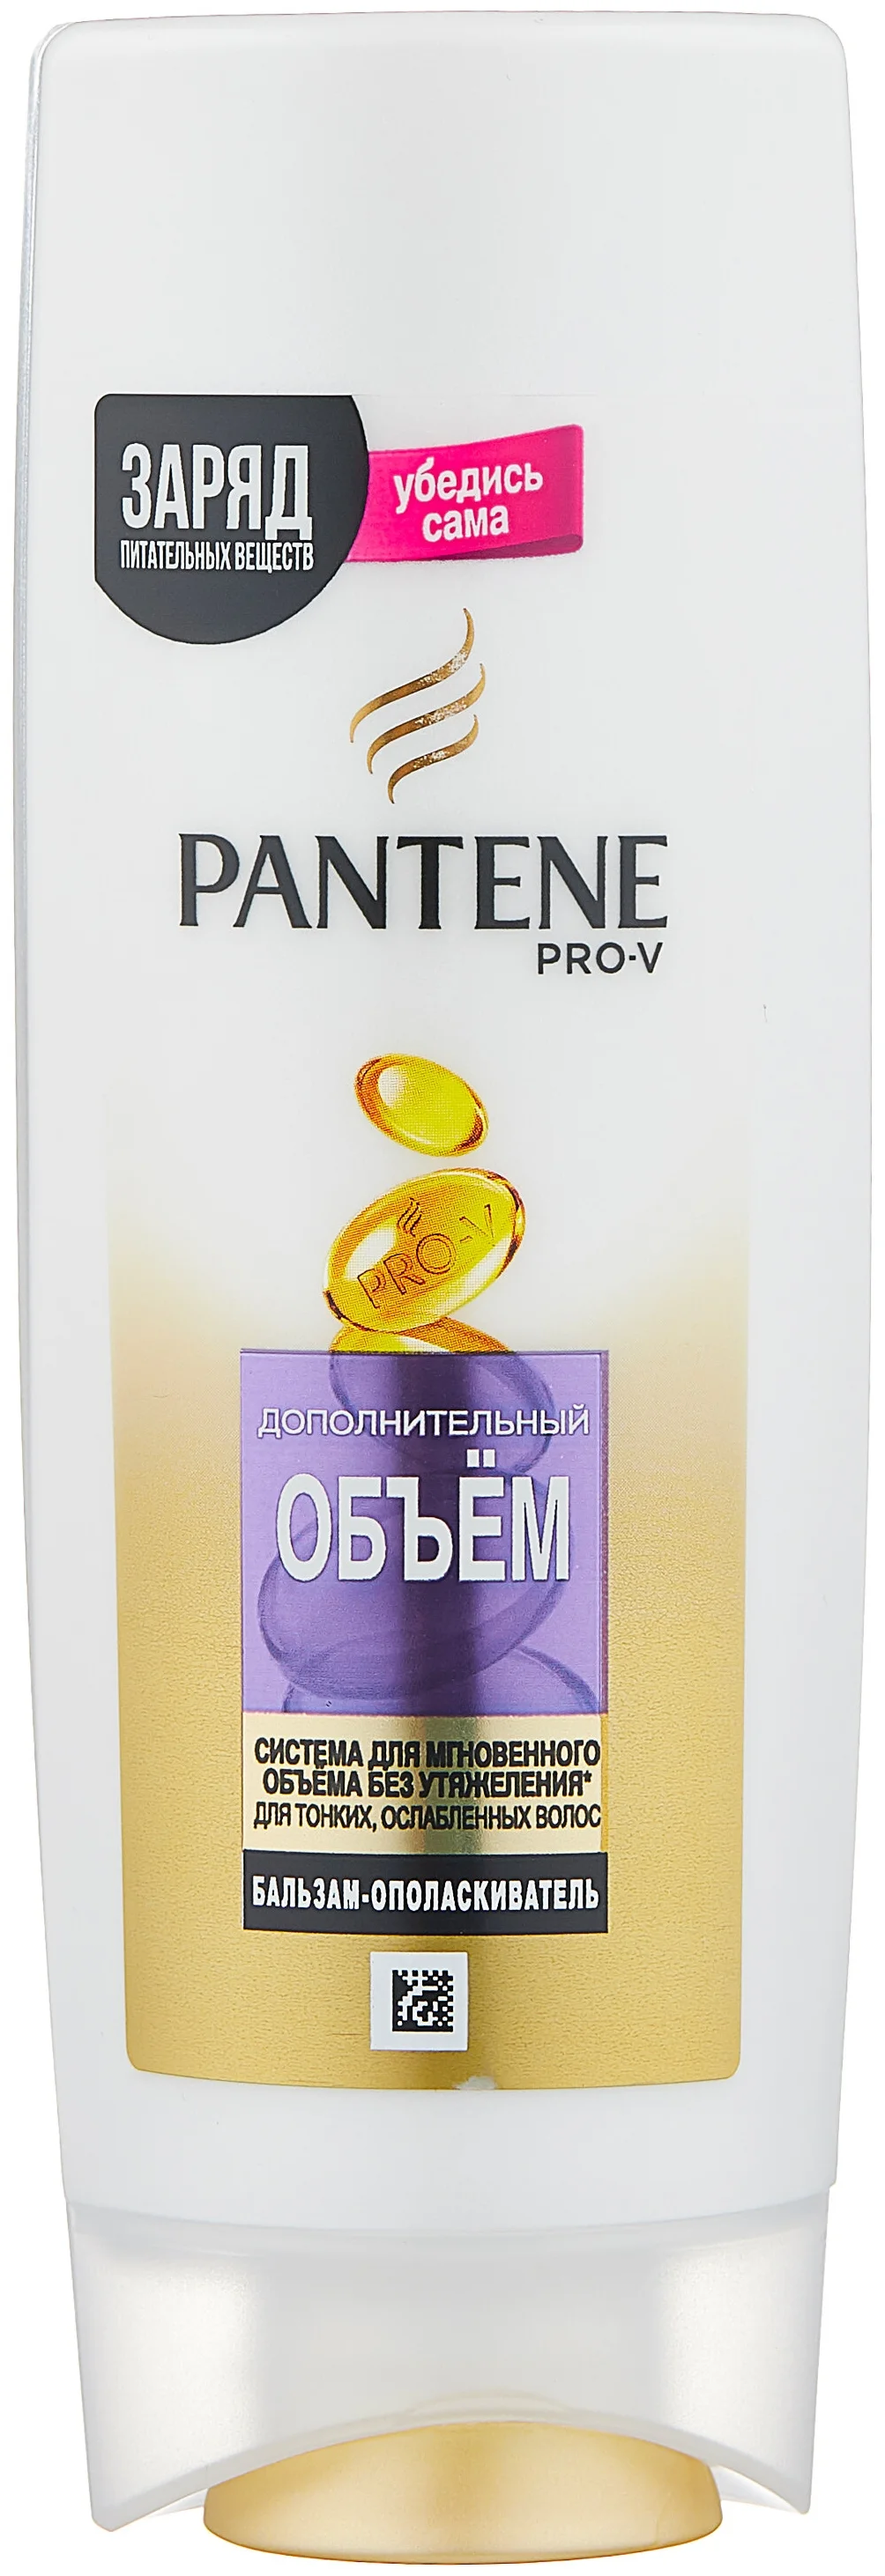 Pantene "Дополнительный объем" для тонких волос  - не содержит парабенов, сульфатов